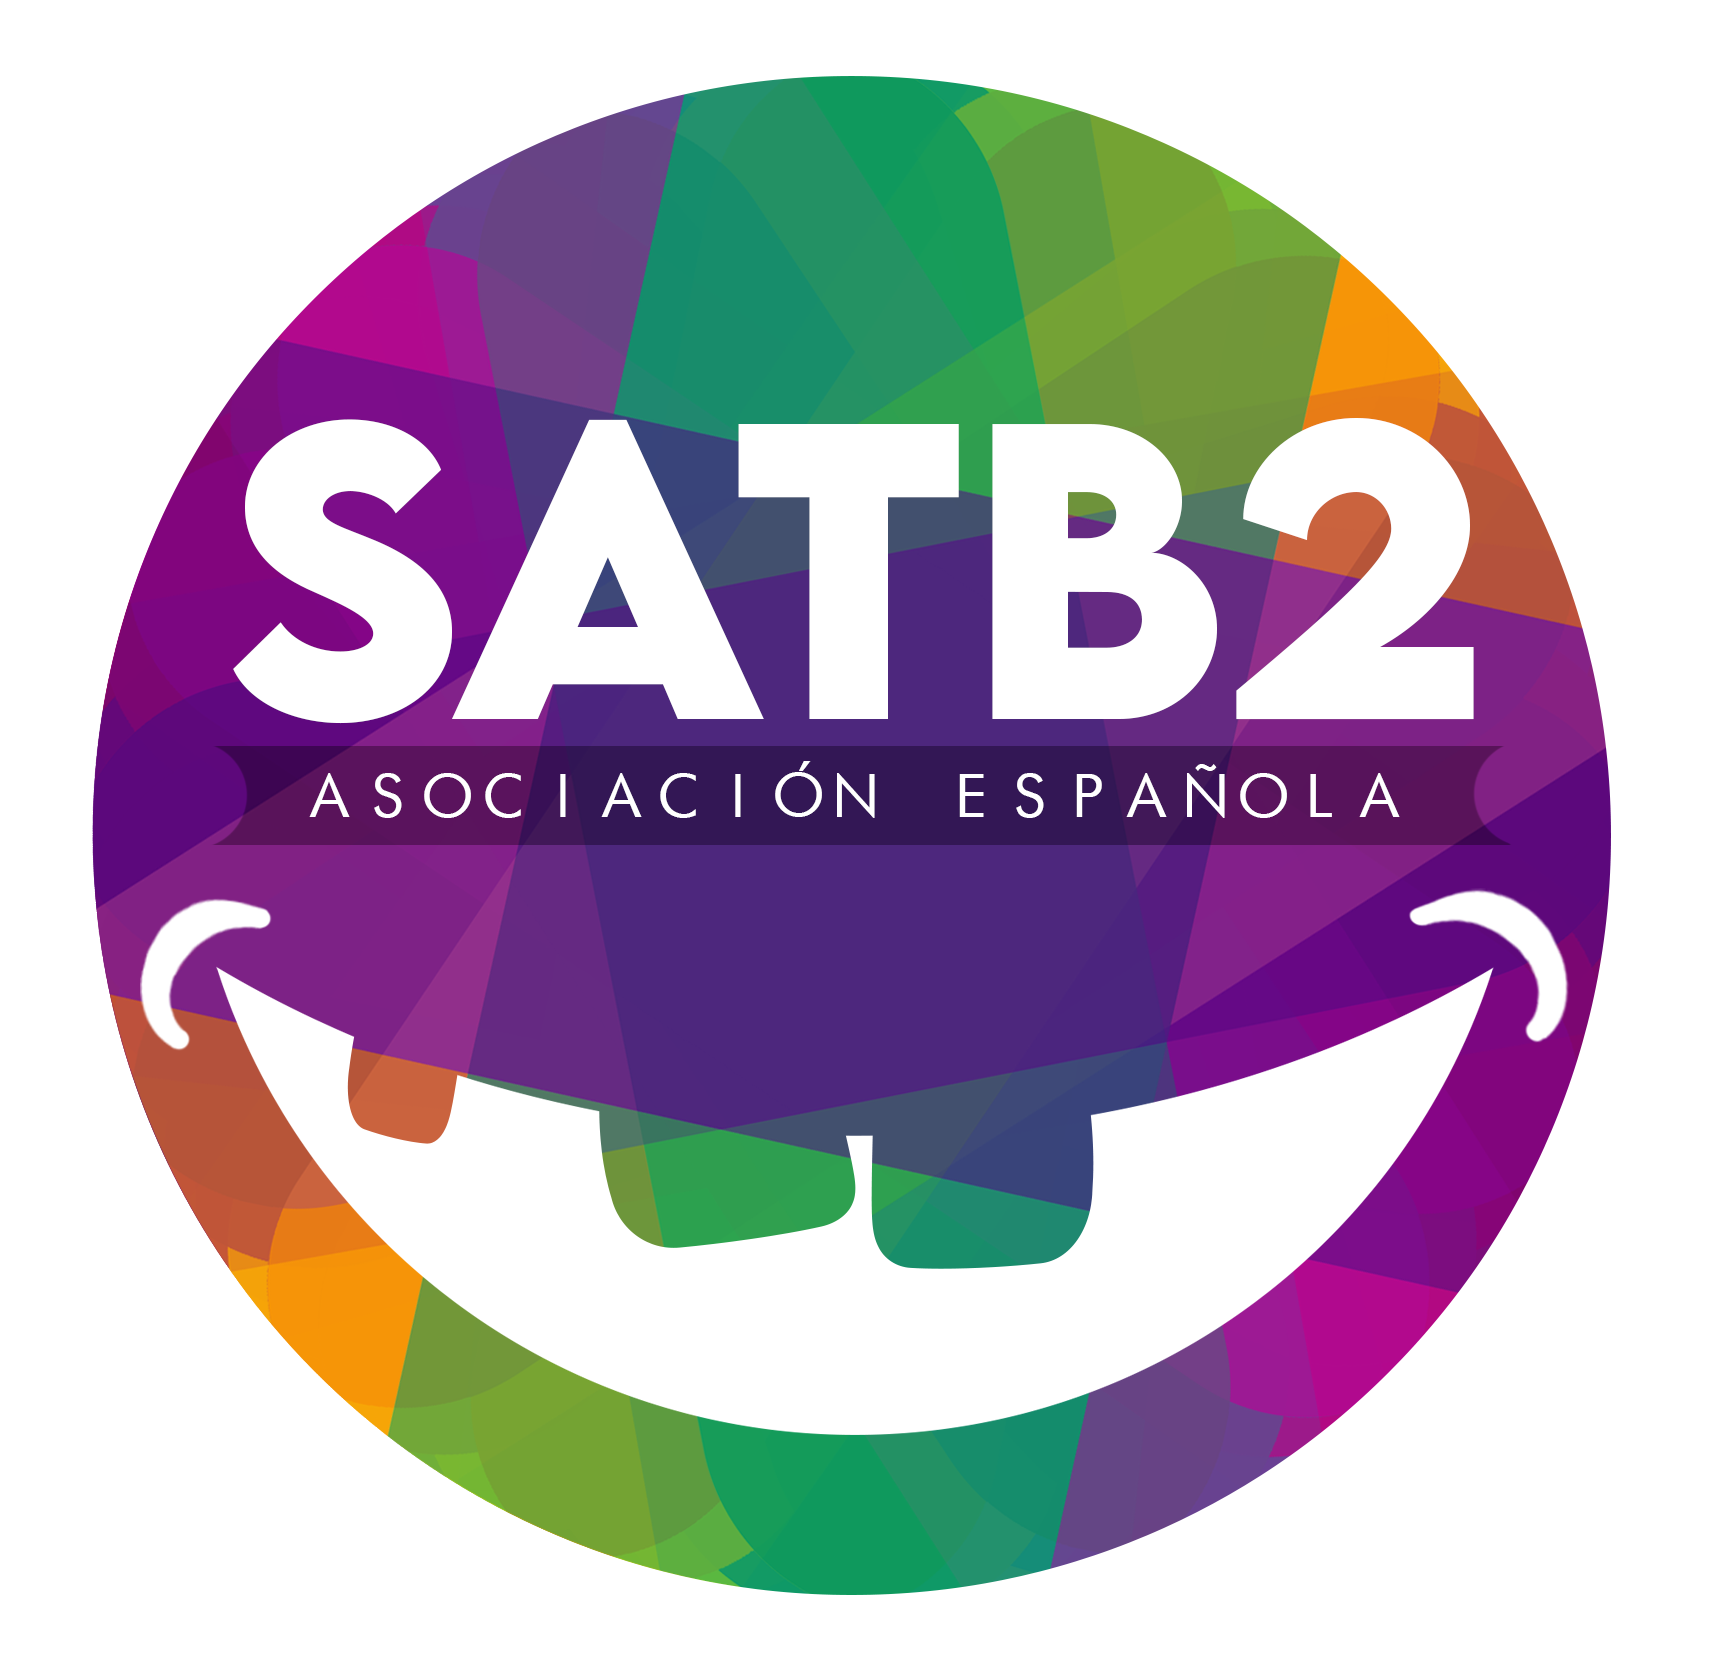 El logo de la asociación española de Satb2.